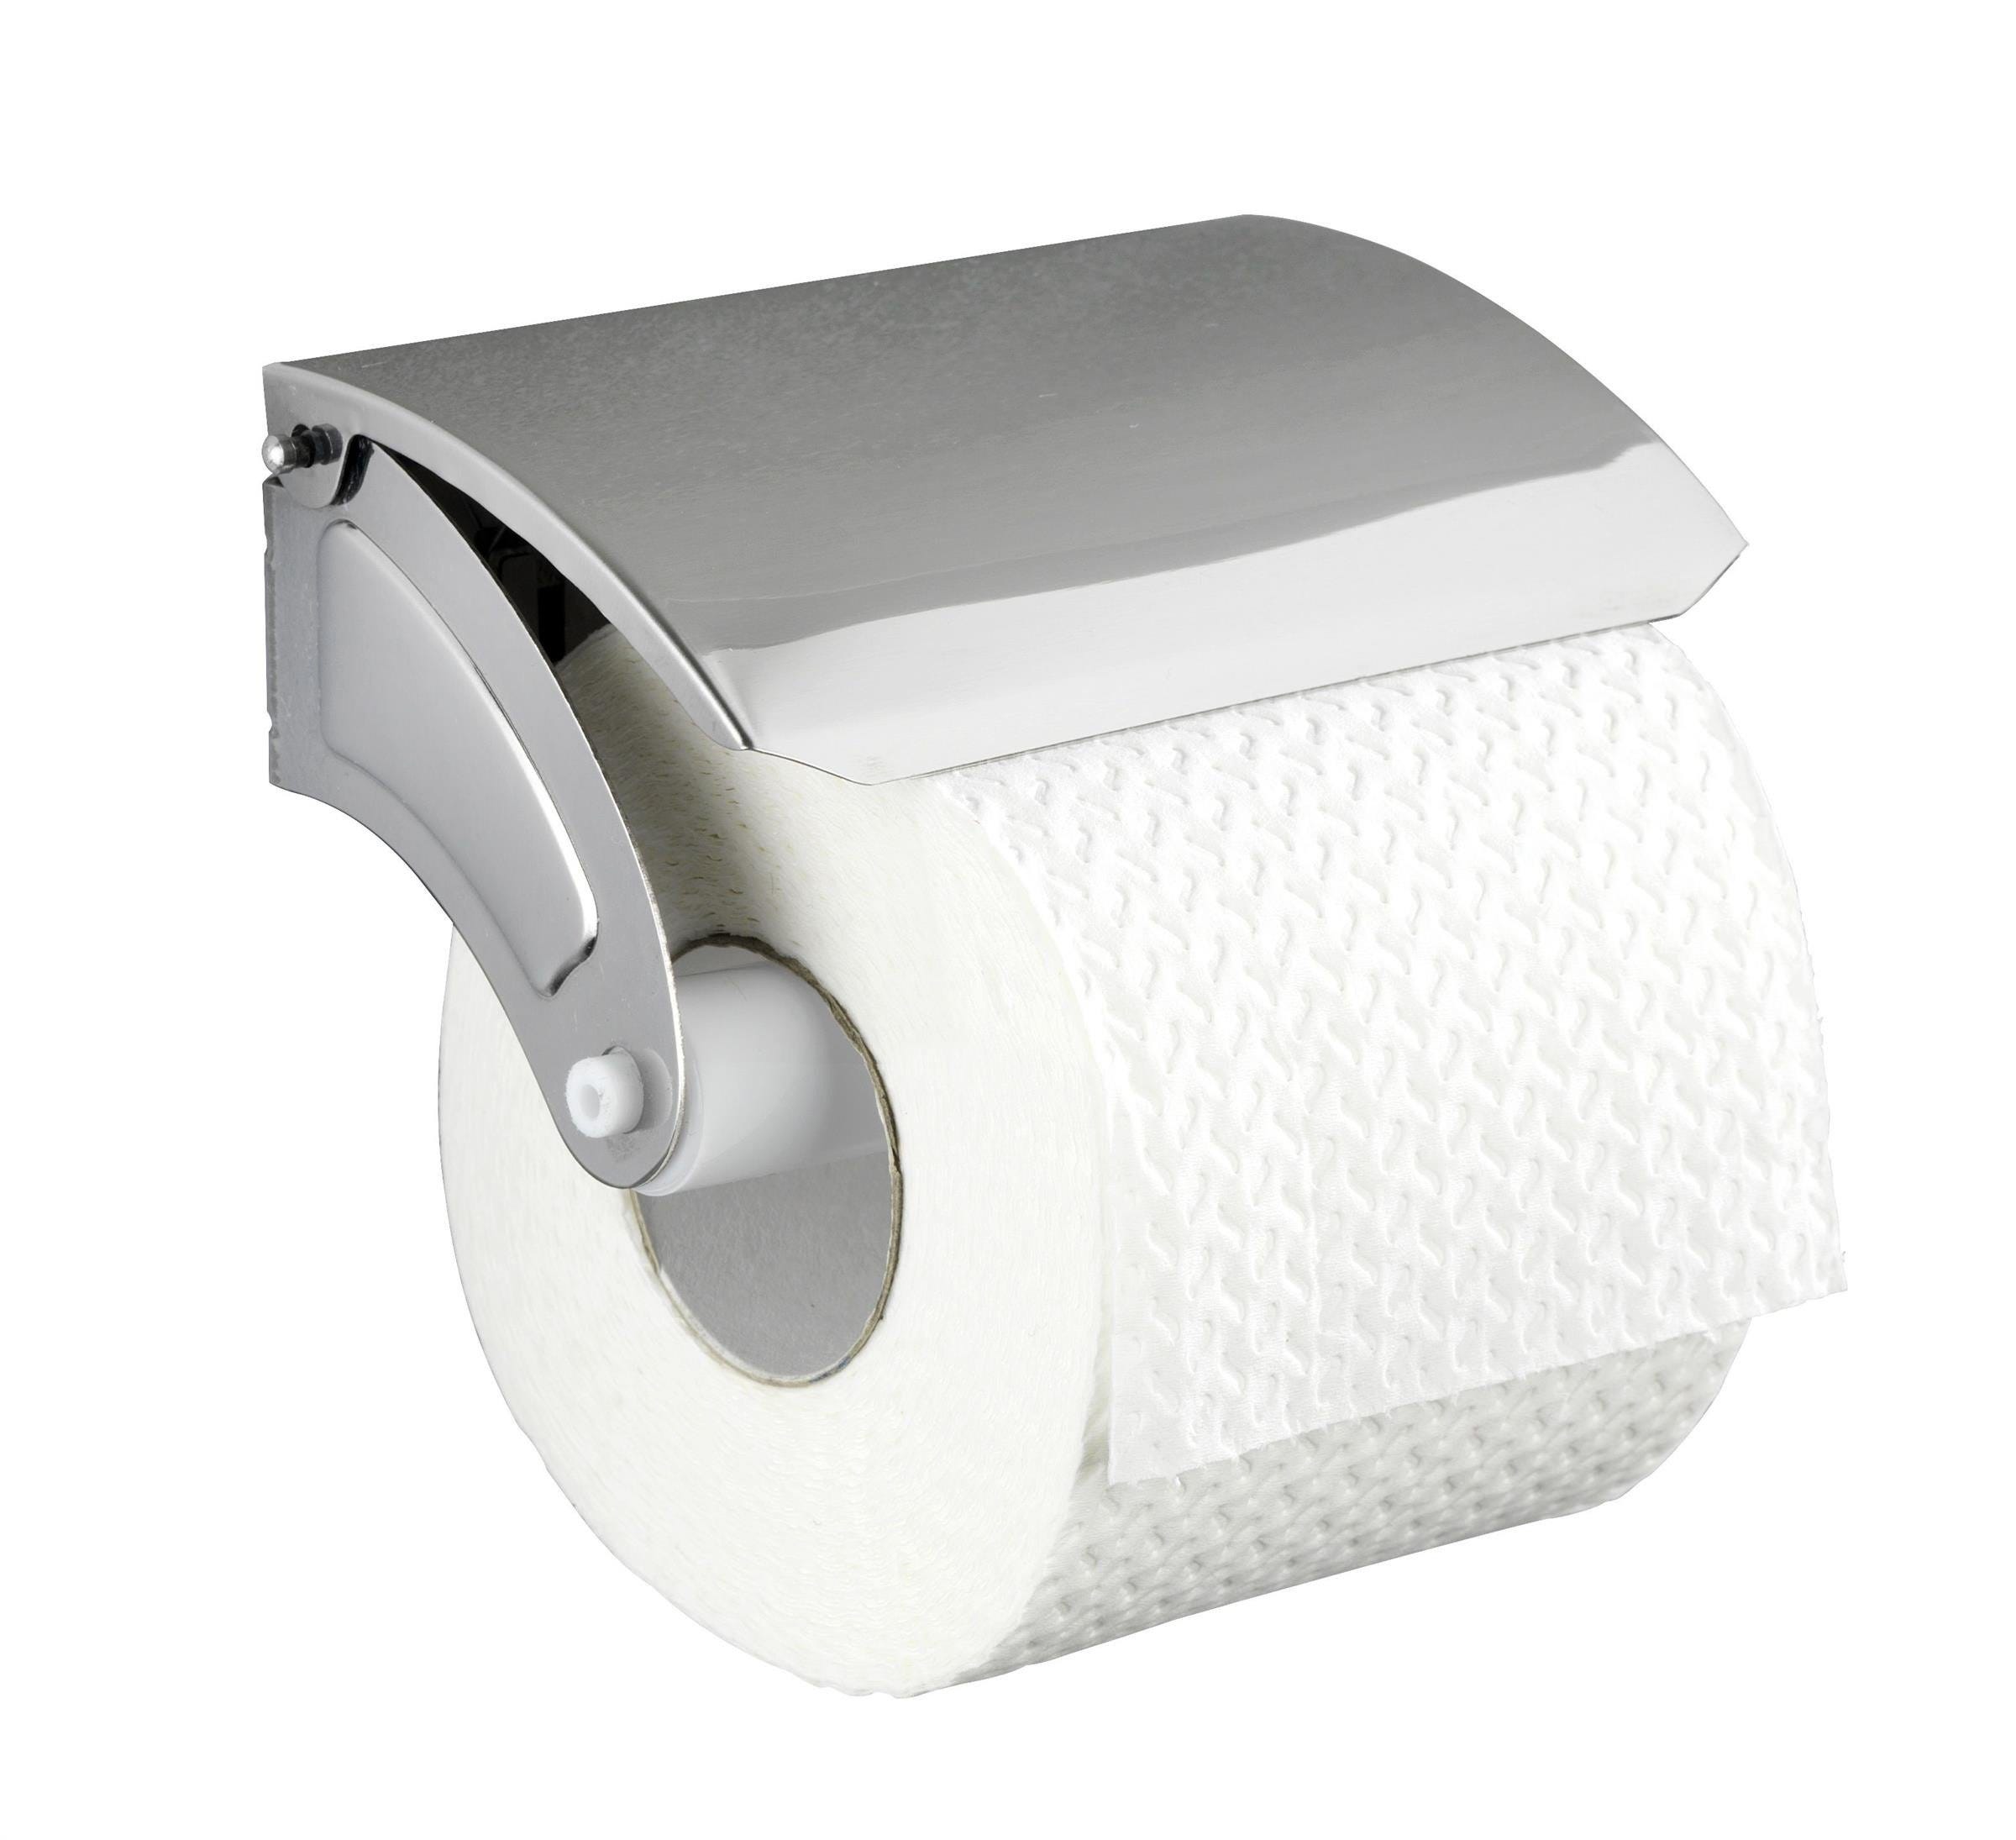 BASIC porte-papier toilette avec rabat, couleur argent, WENKO, WENKO